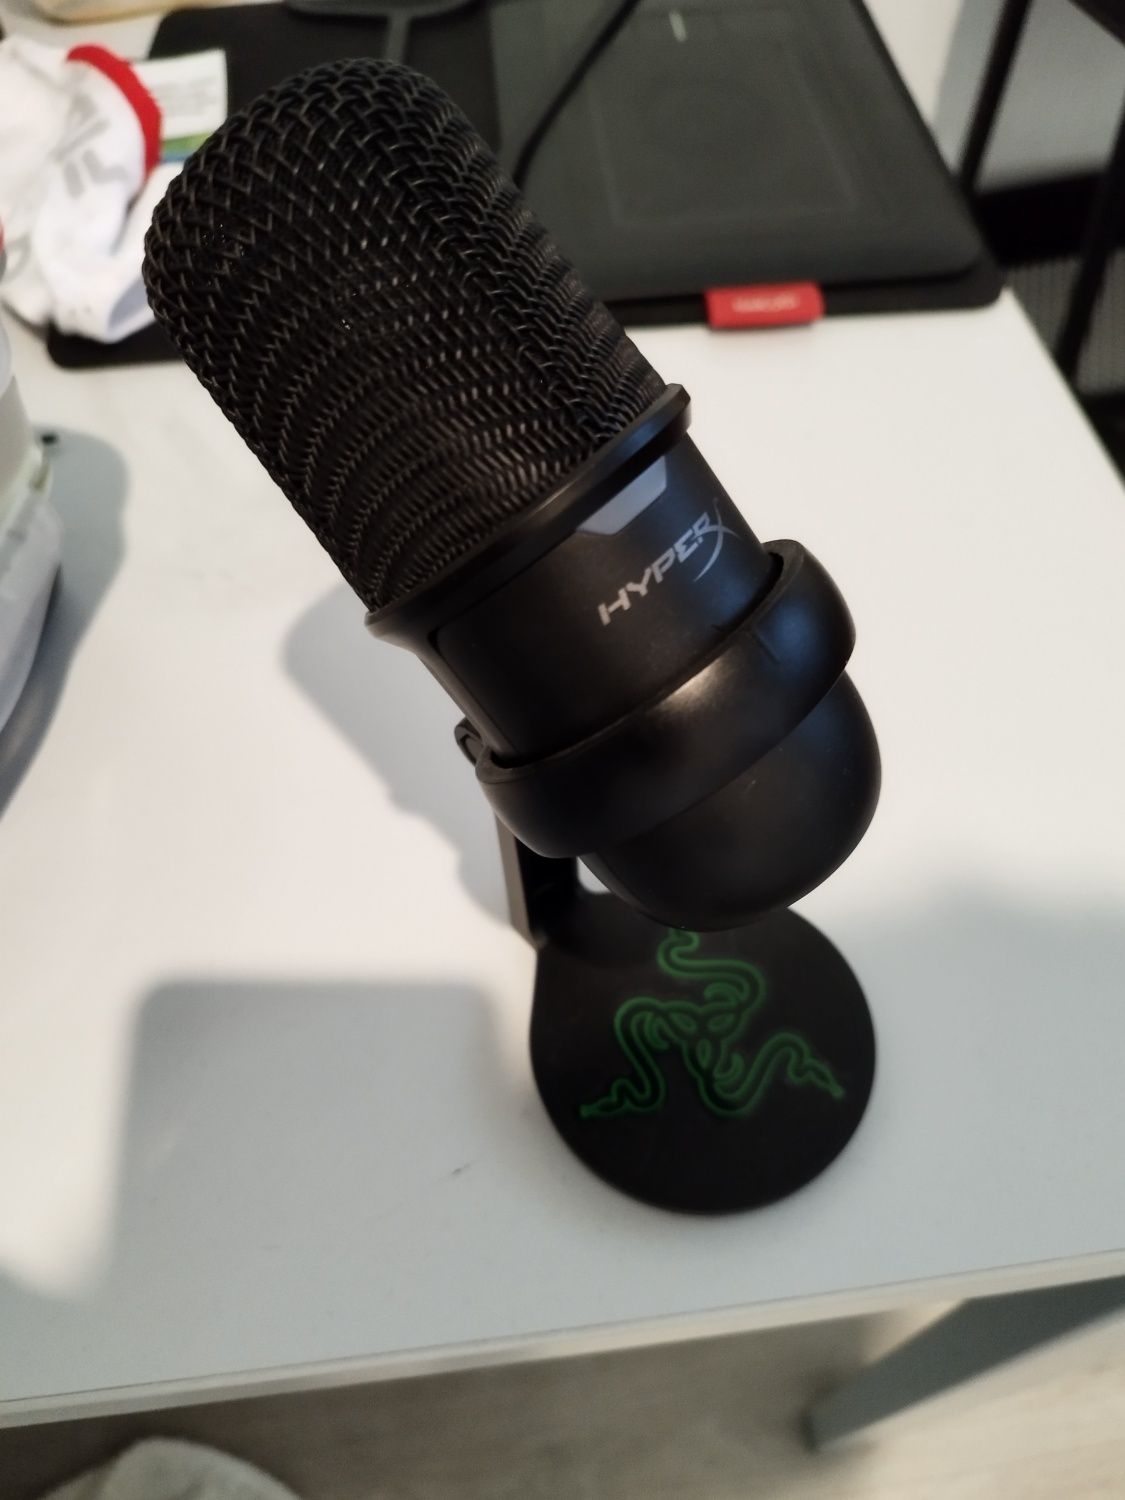 Microfone Condensador HyperX touch